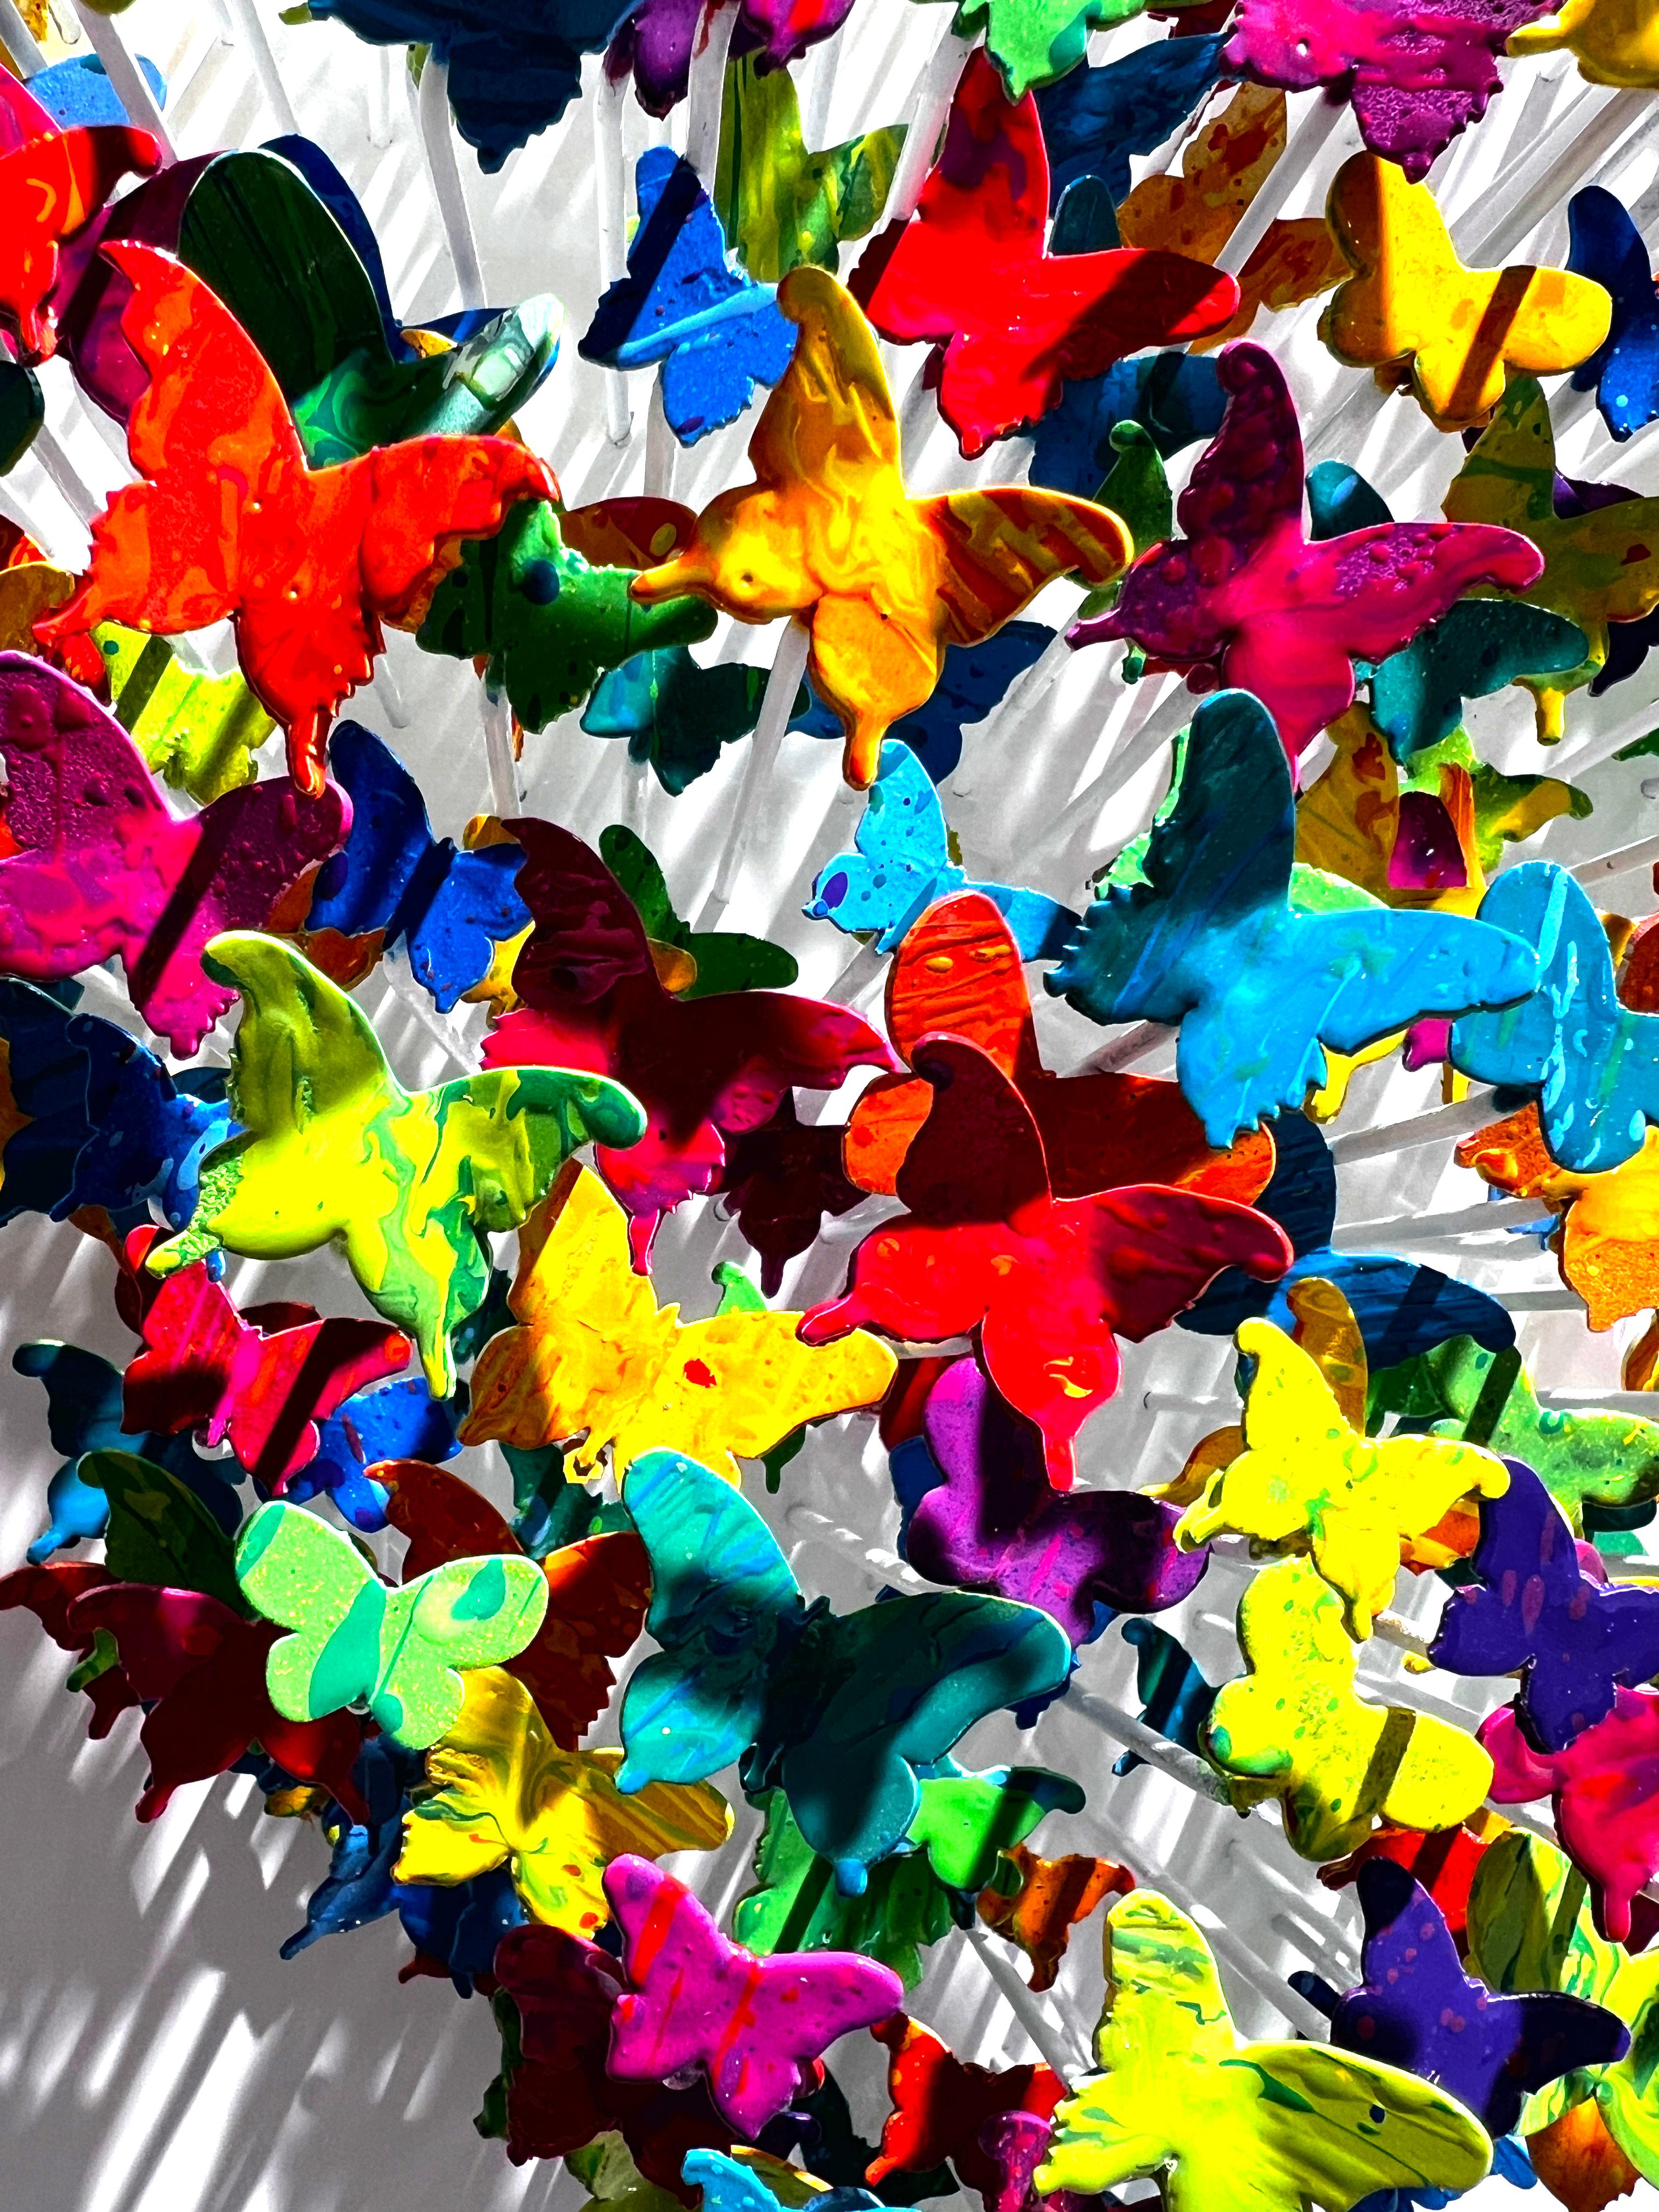 Kreis des Lebens Schmetterling - Candy, Wandskulptur aus Metall in Mischtechnik (Zeitgenössisch), Mixed Media Art, von Joel Amit